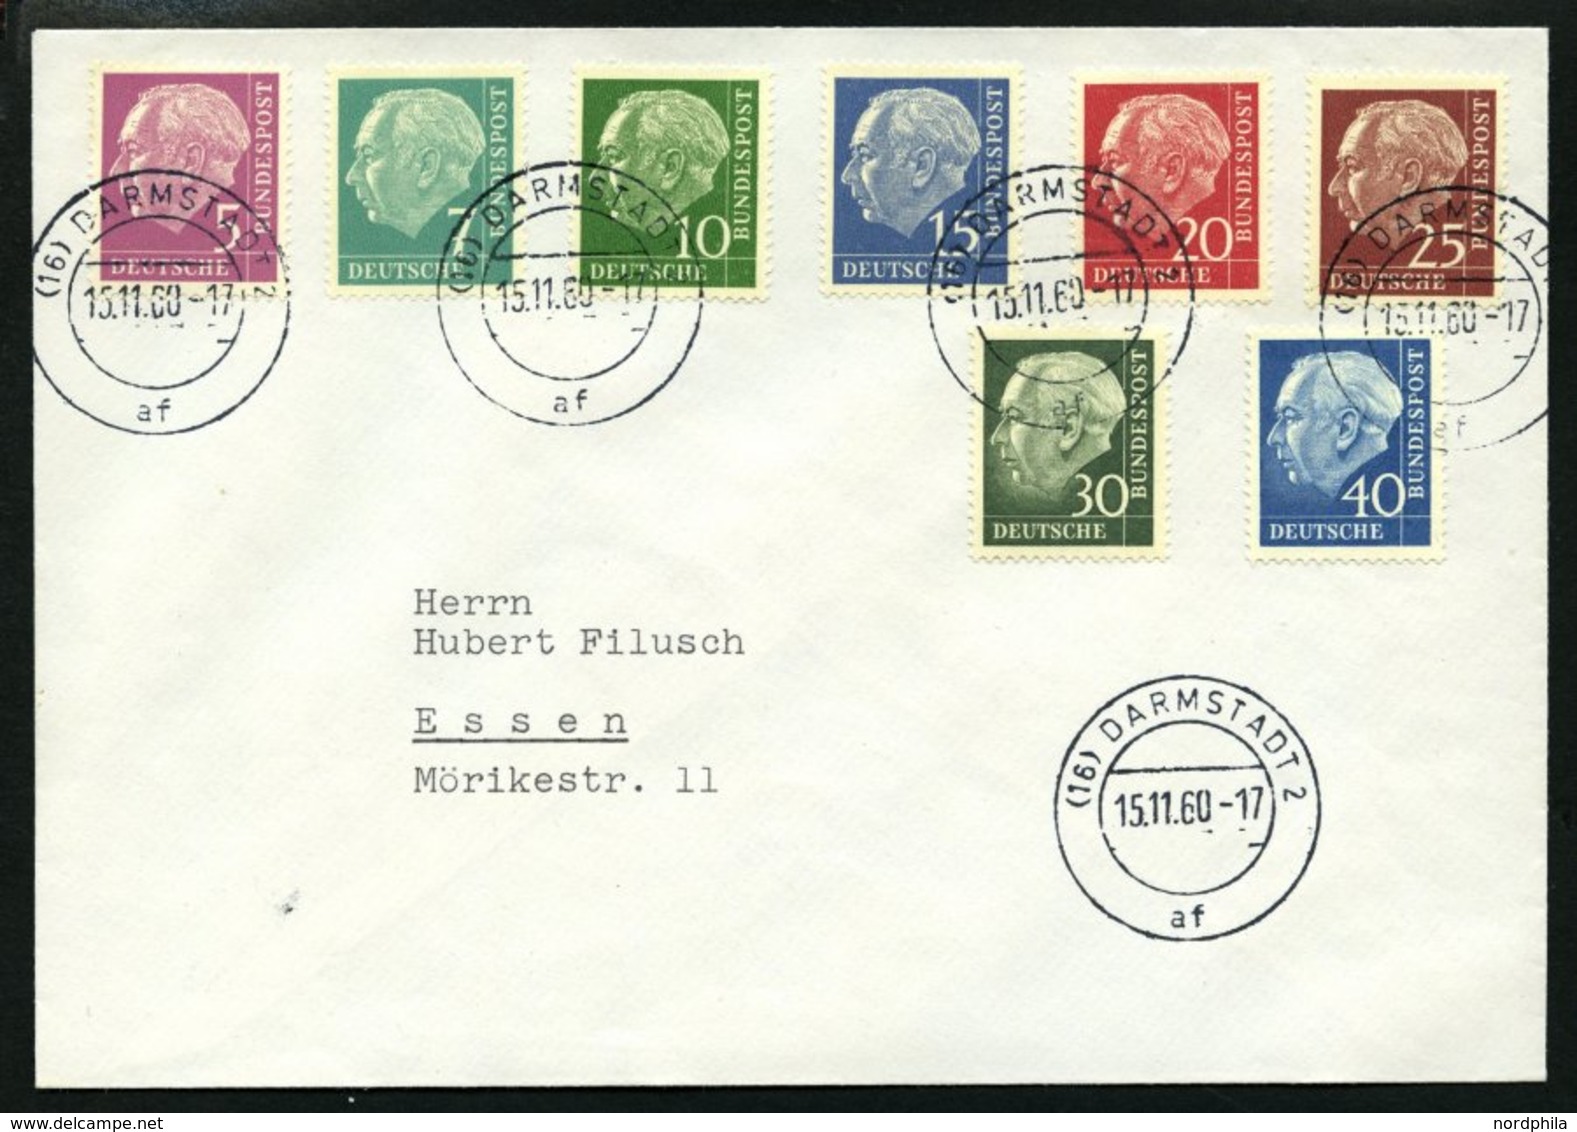 BUNDESREPUBLIK 179-260y BRIEF, 1960, Heuss Lumogen, Prachtsatz Auf Umschlag Mit Stempeln DARMSTADT 2af, Mi. (450.-) - Used Stamps